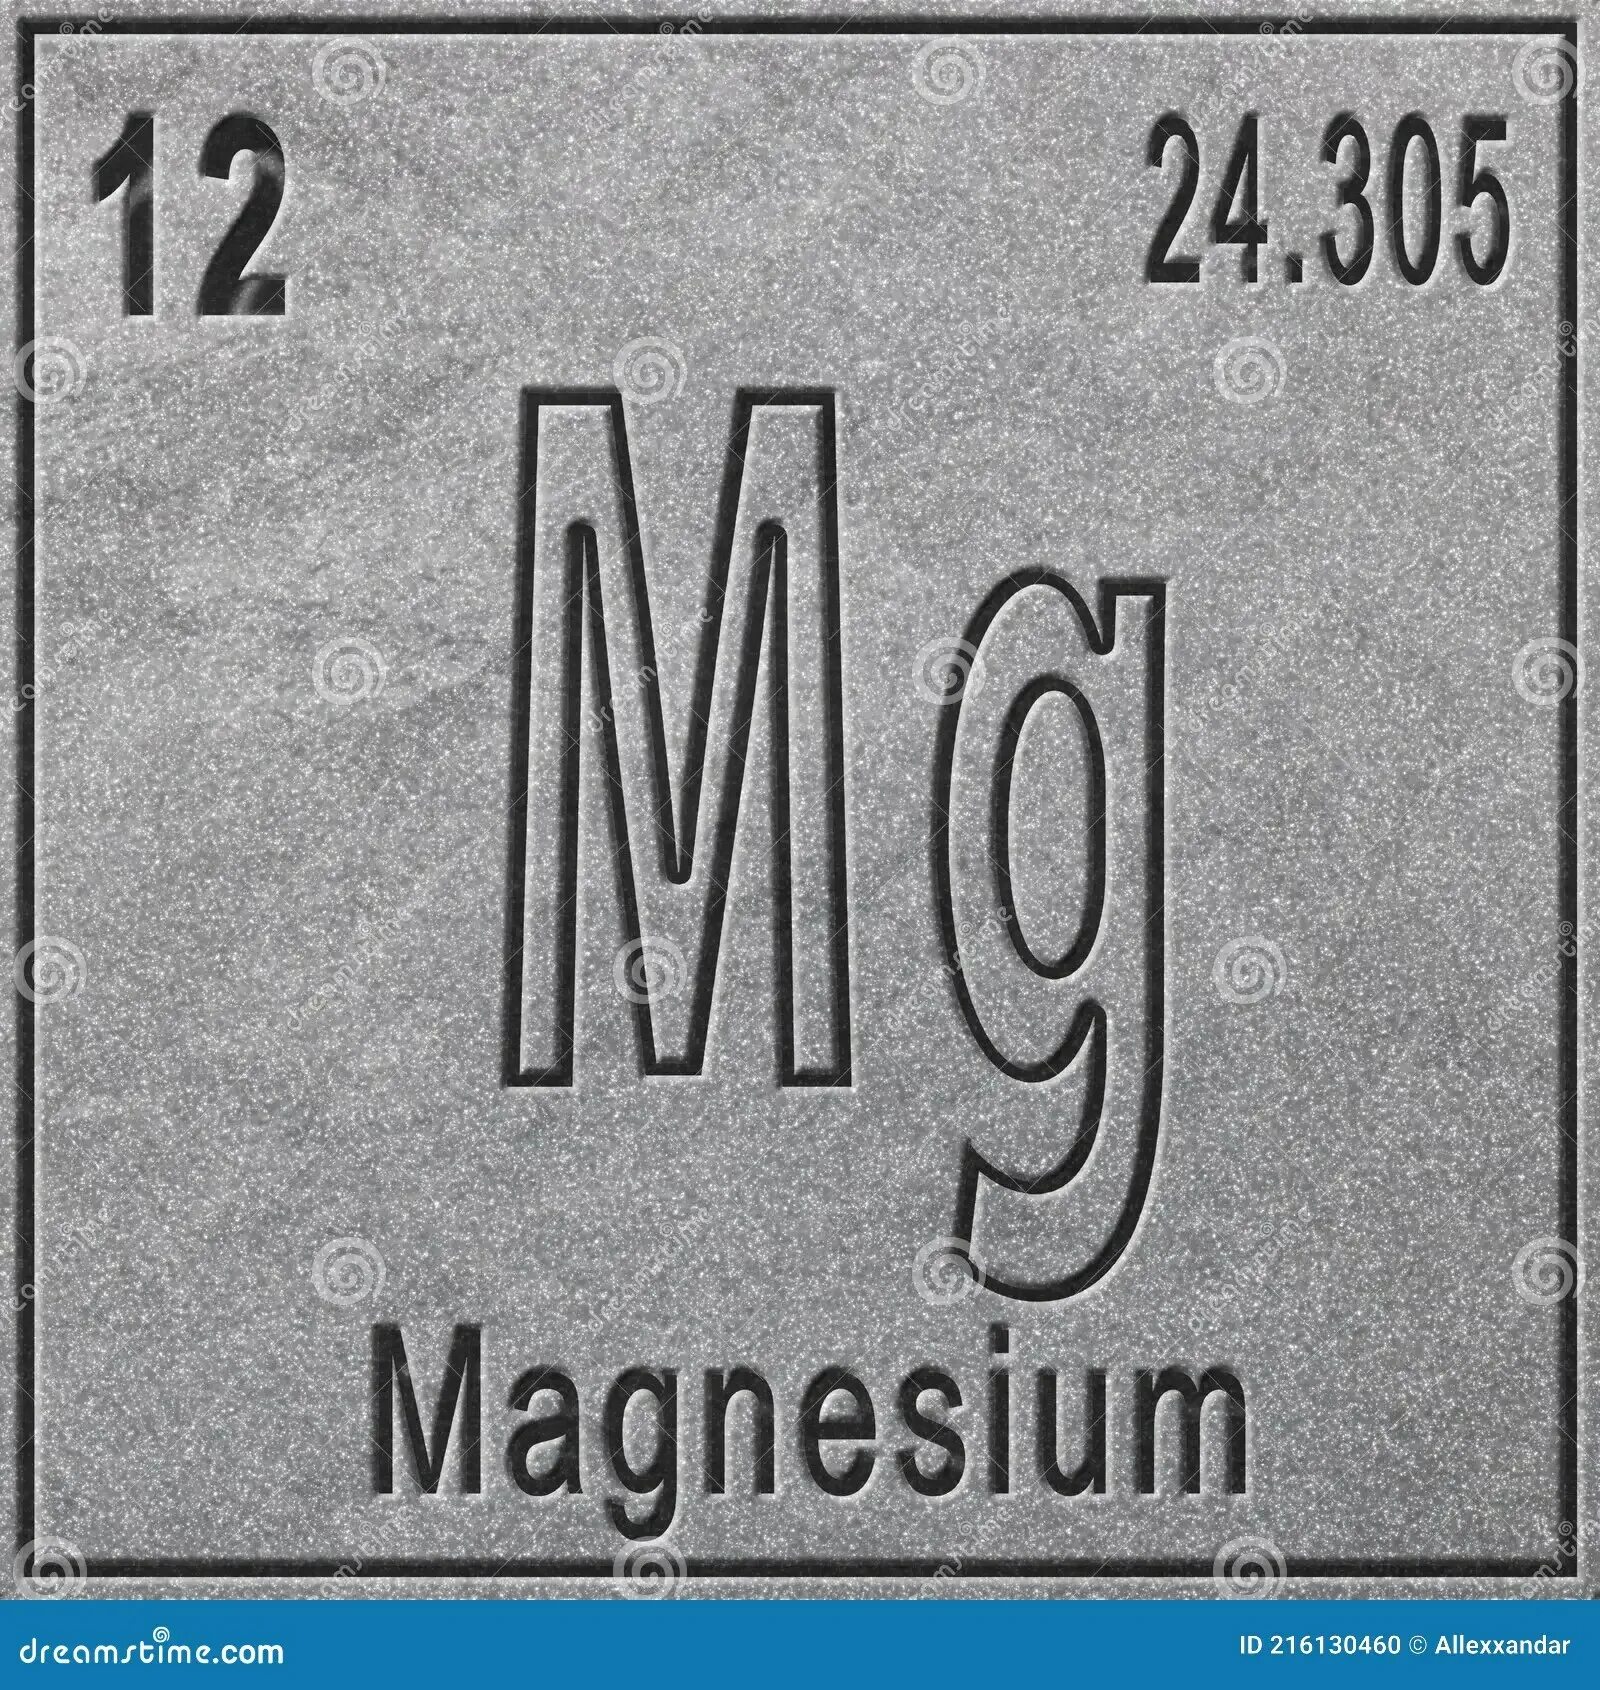 MG химический элемент. Магний элемент. Магний хим элемент. Магний картинка химического элемента. Магний химический элемент применение